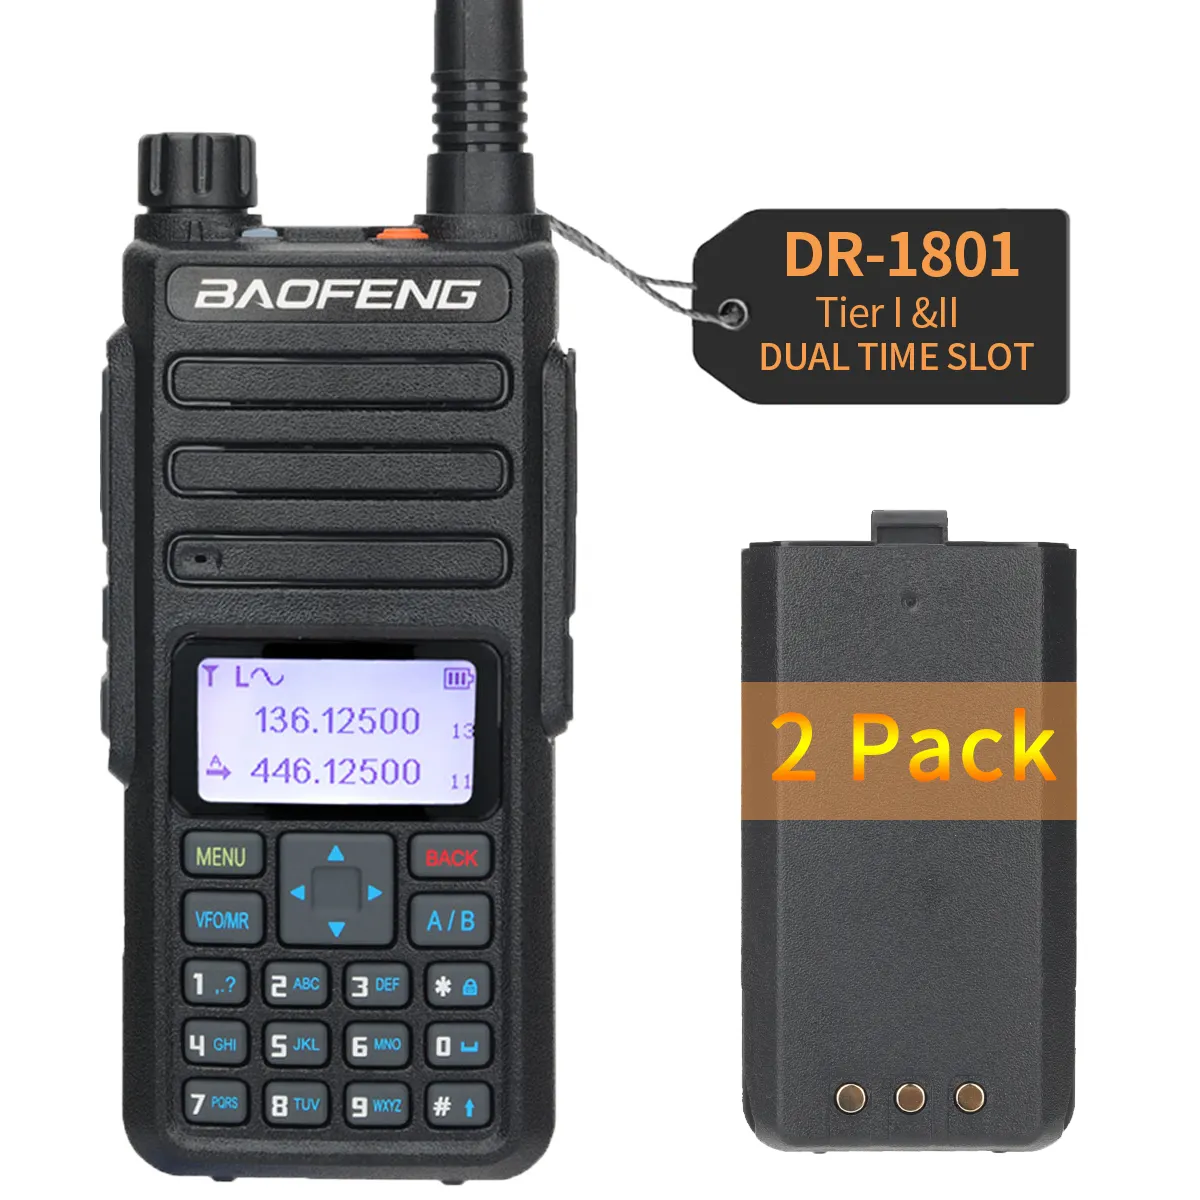 Baofeng-walkie-talkie de largo alcance DR-1801, doble banda, DMR, Digital/analógico, nivel 1 y 2 niveles II, ranura de tiempo Dual, actualización de Radio de DM-1801